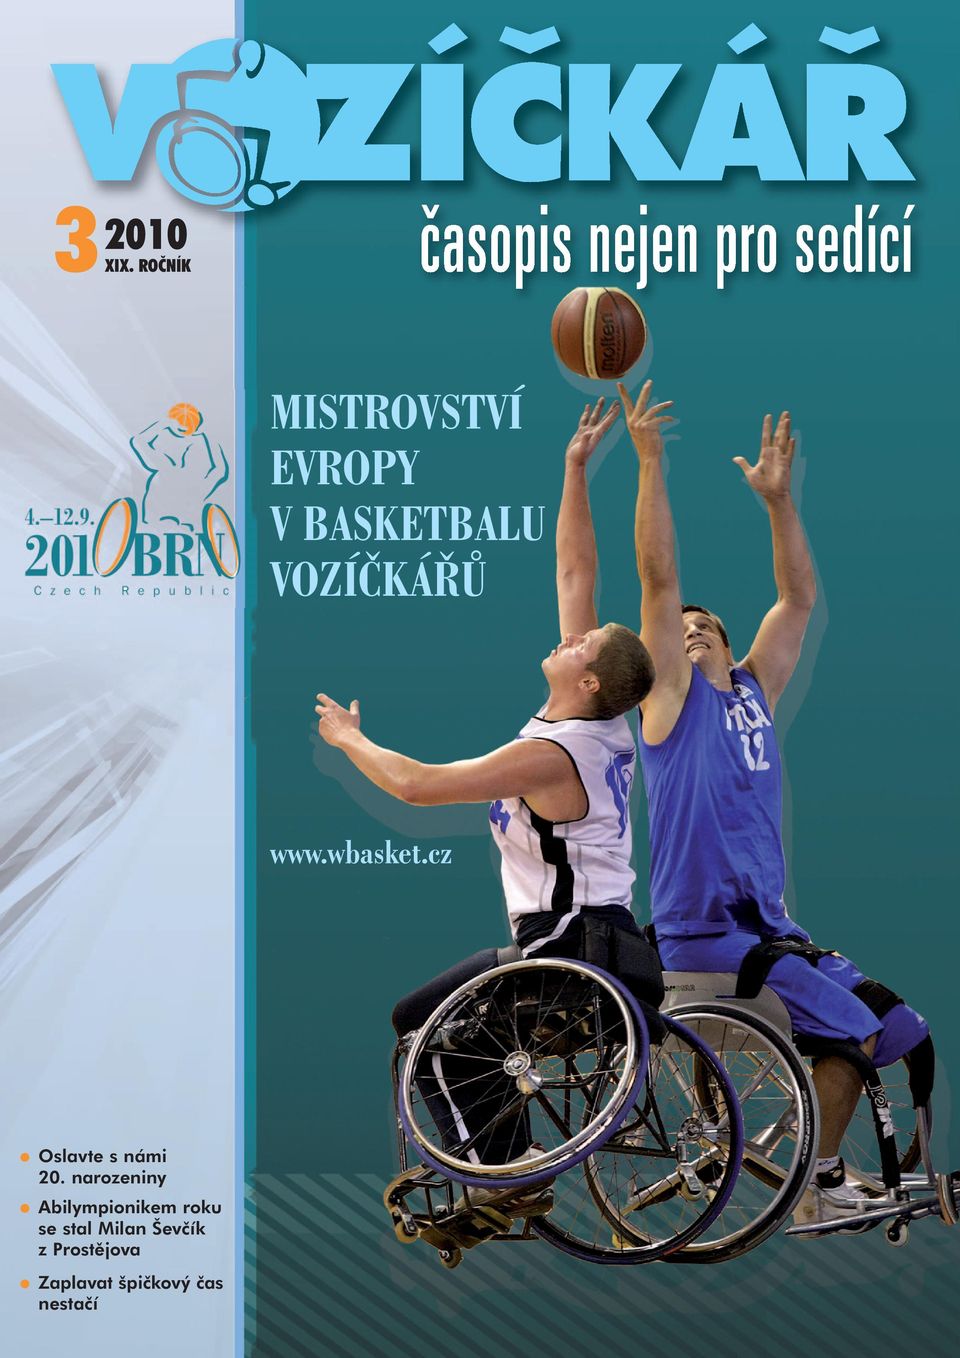 KÁR U www.wbasket.cz Oslavte s námi 20.